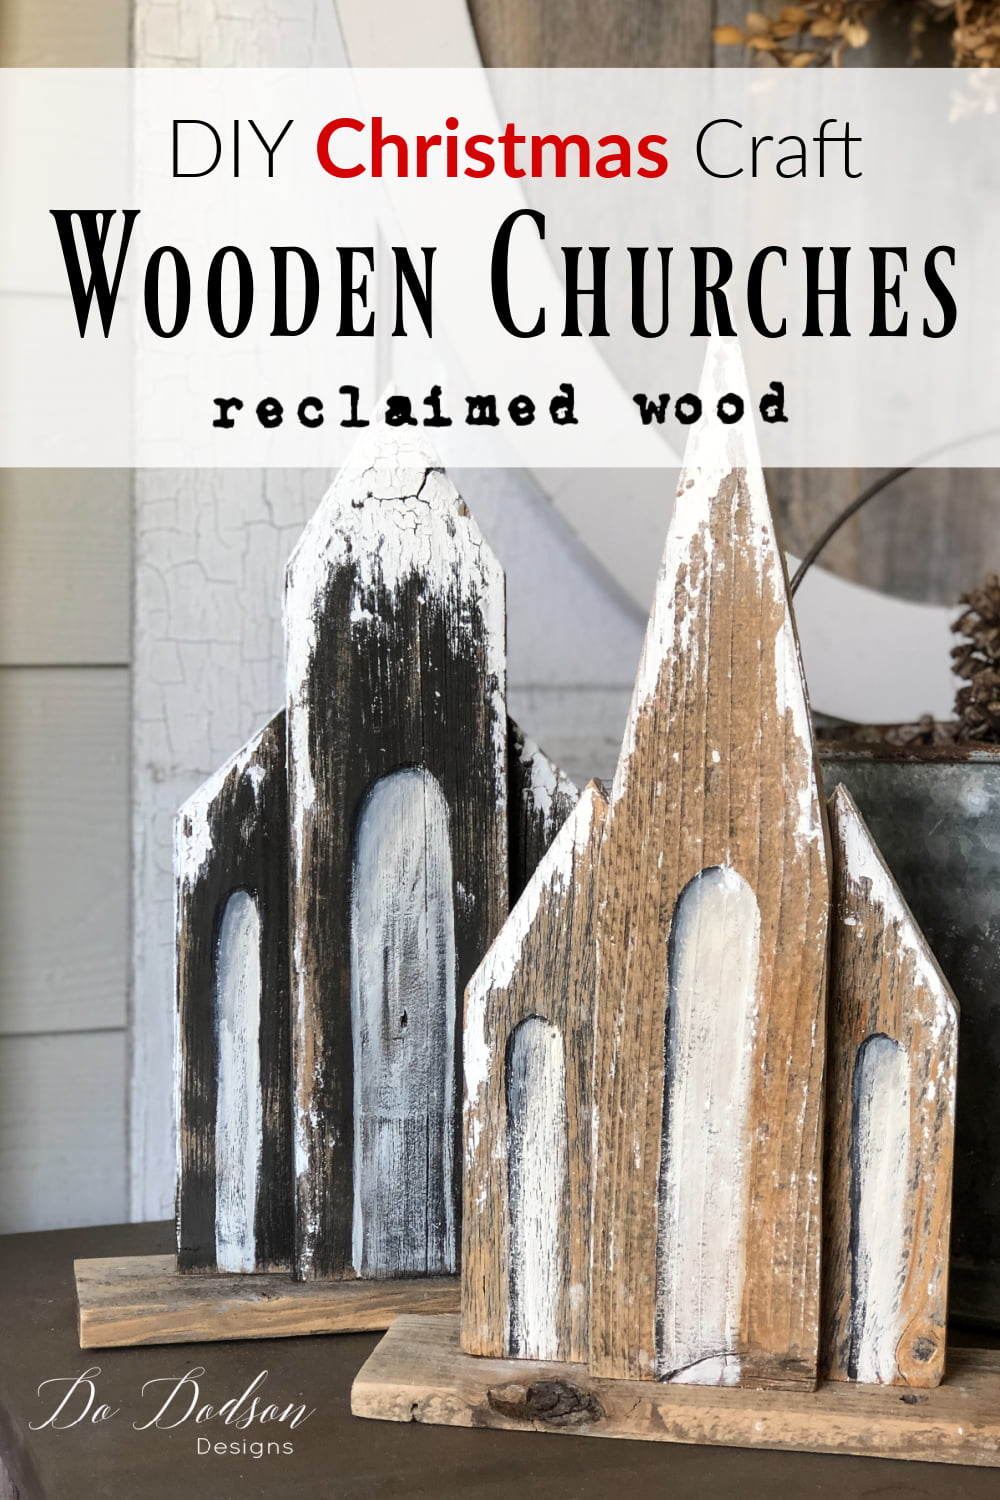 Wooden Churches - DIY Christmas Craft Decor - Do Dodson Designs